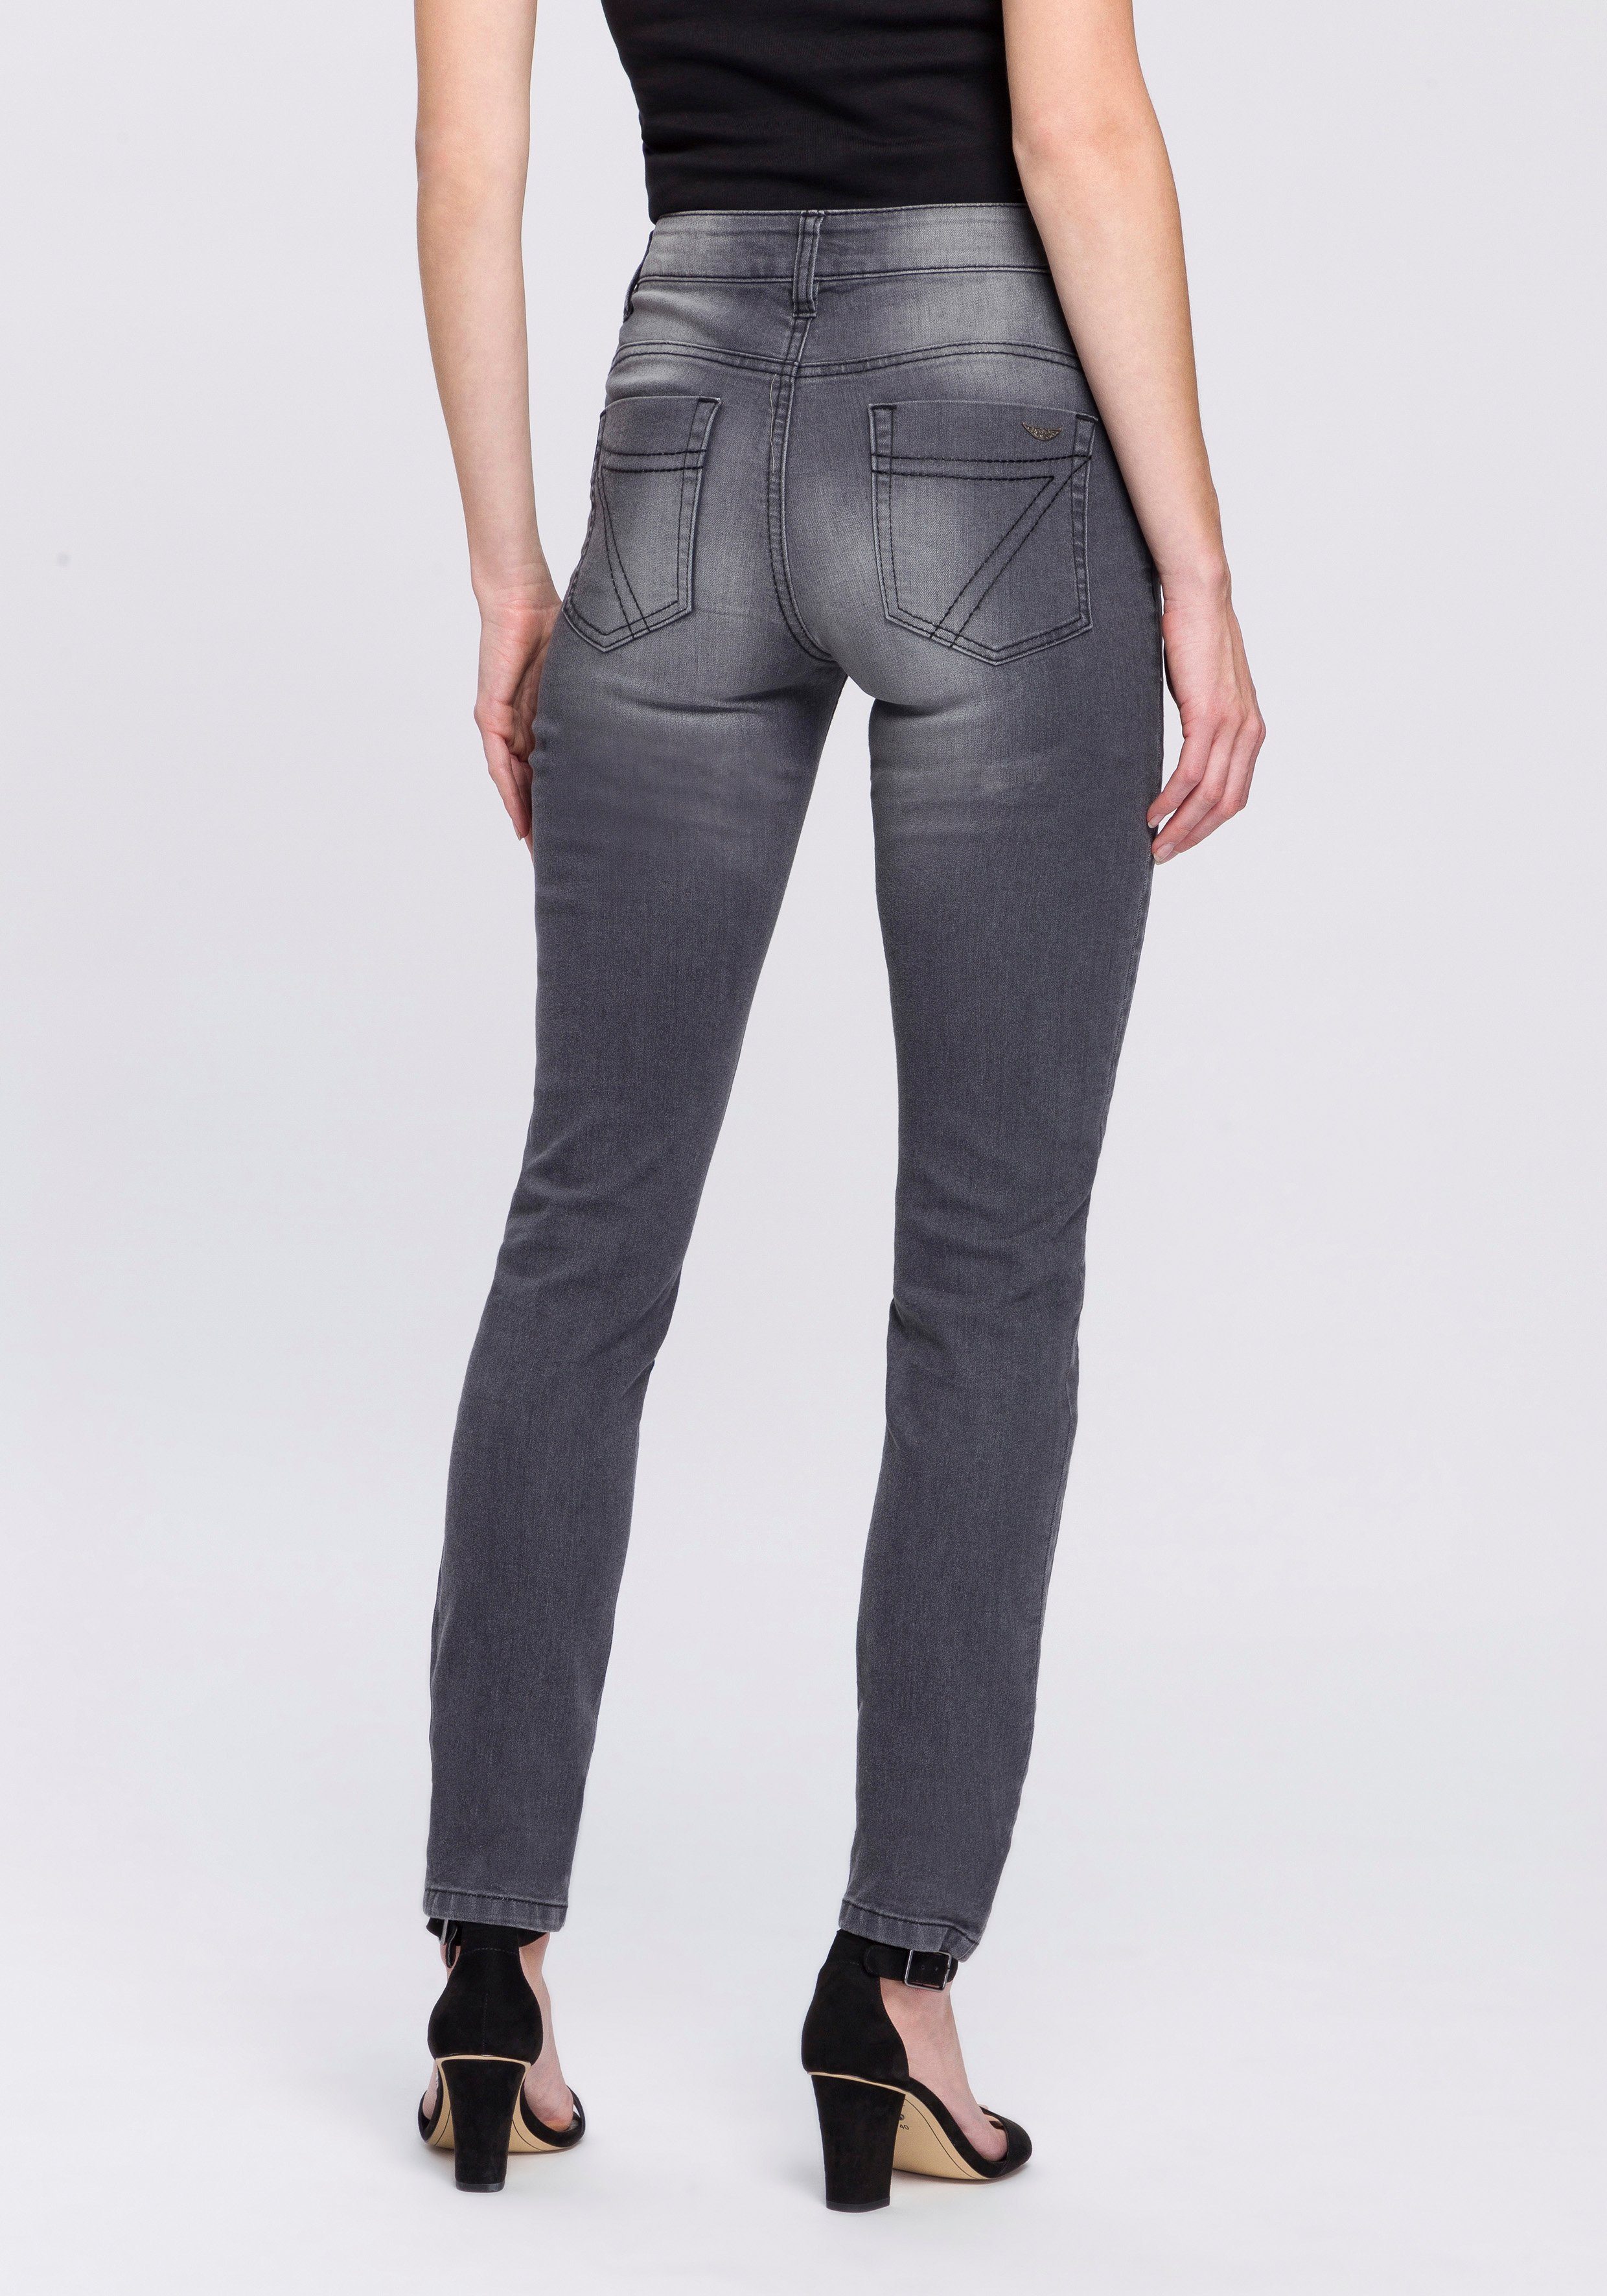 Arizona Slim-fit-Jeans Mit modischen Nahtverläufen - NEUE KOLLEKTION